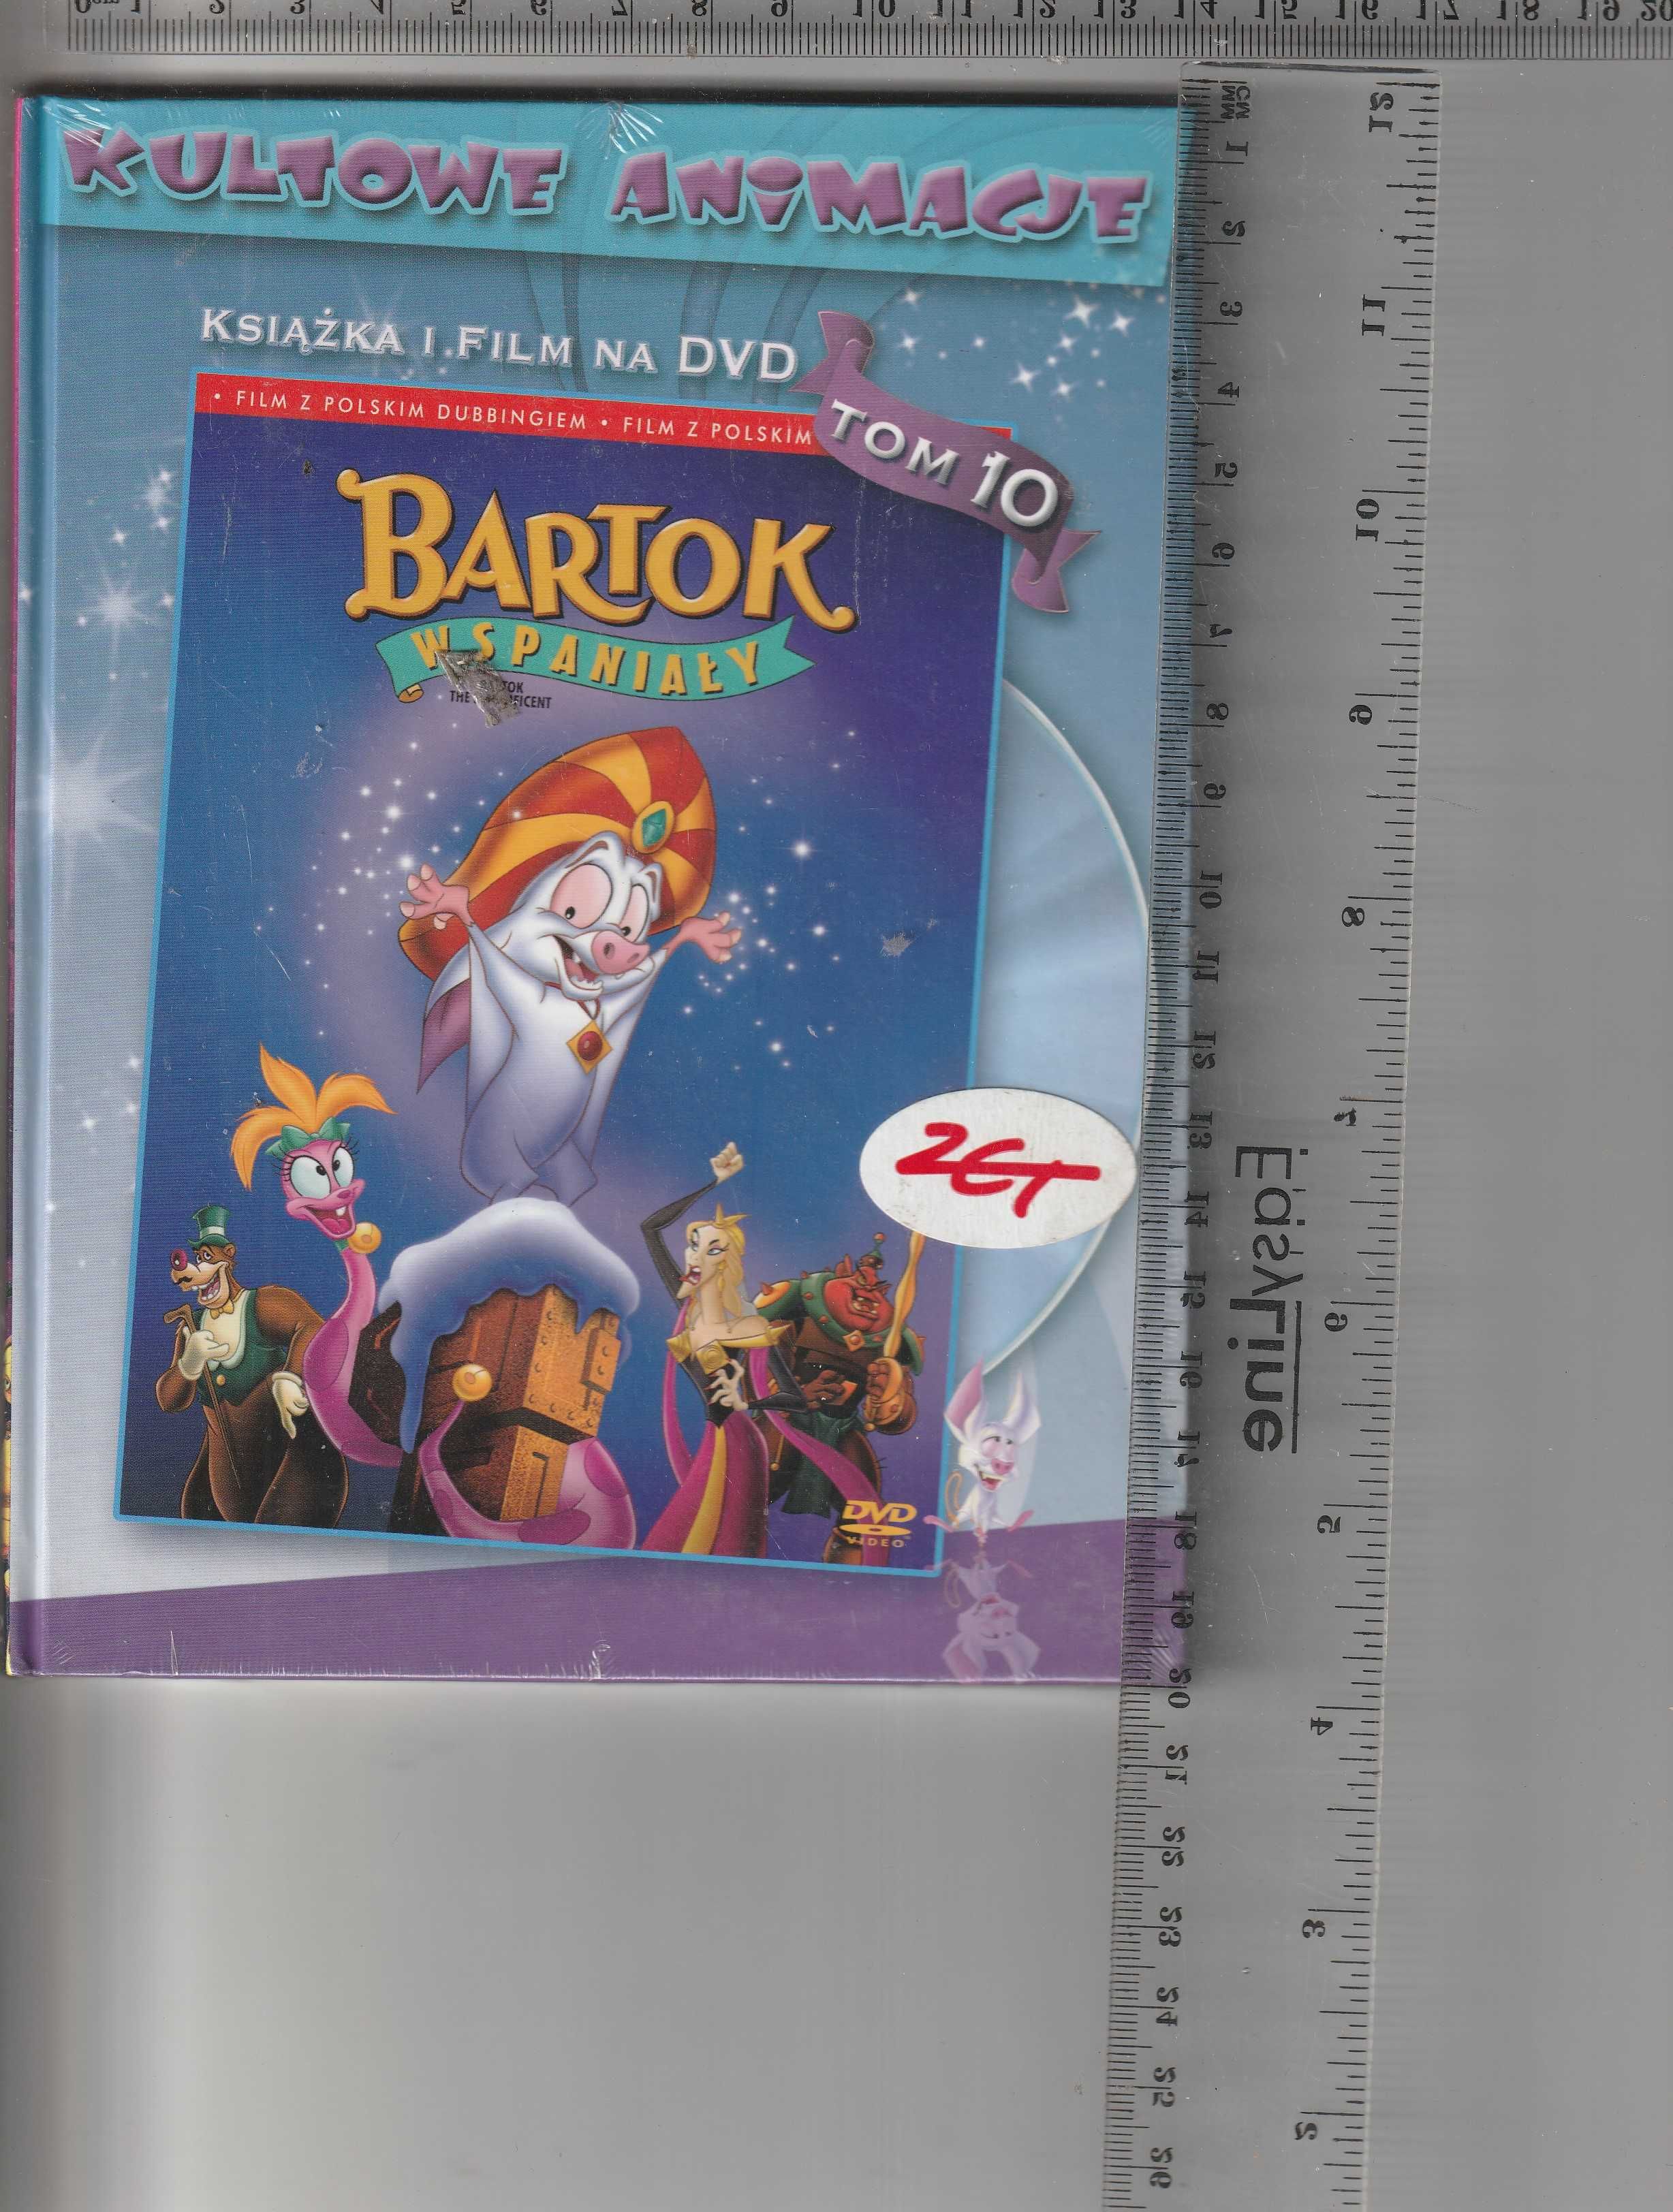 Bartok wspaniały DVD